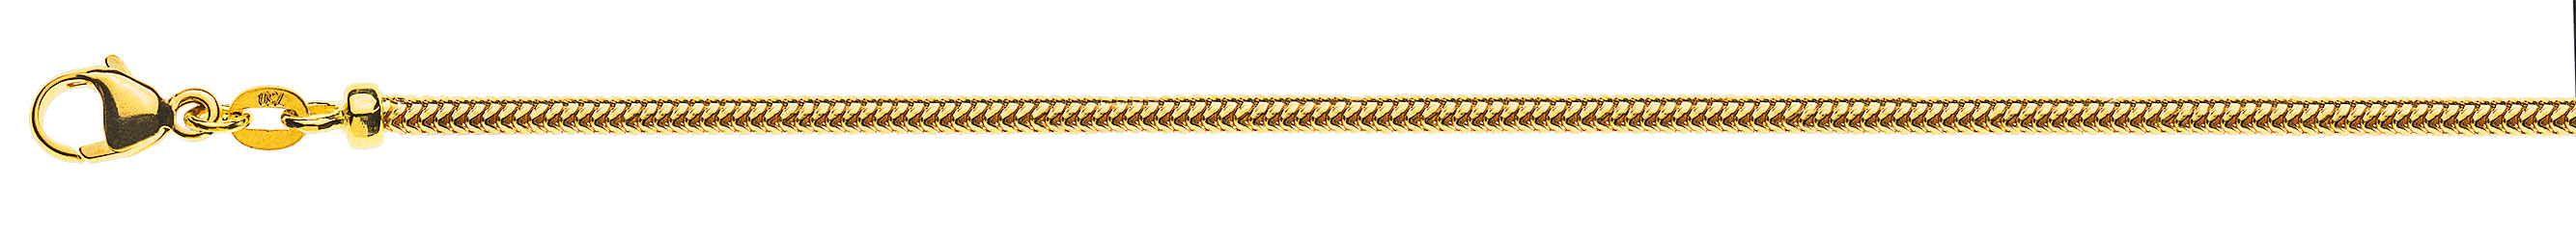 AURONOS Prestige Collier en or jaune 18K chaîne serpent 42cm 2.4mm